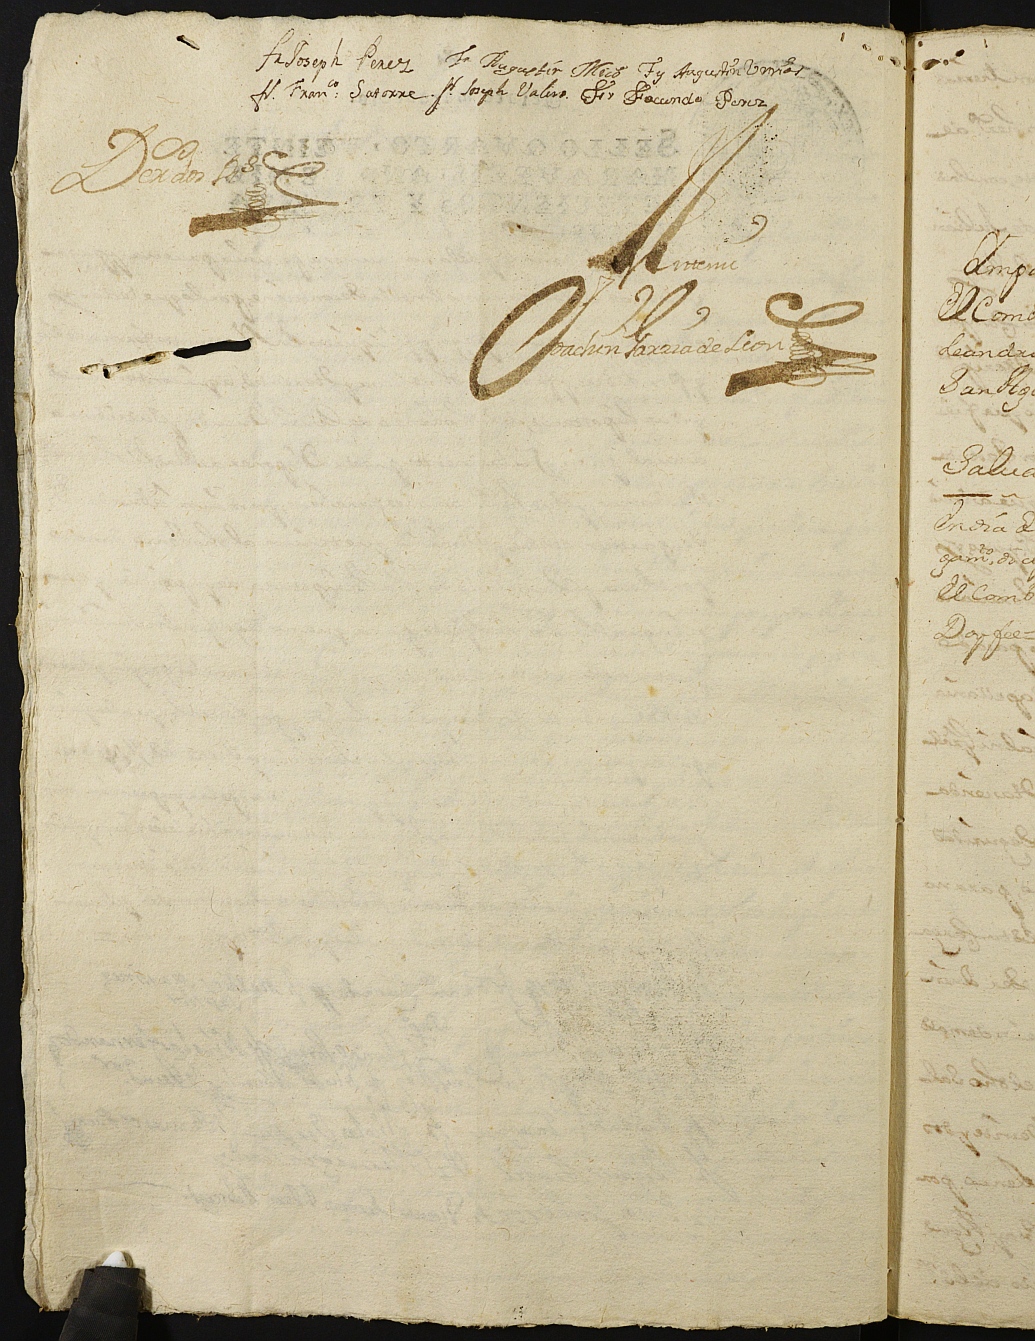 Registro de Joaquín García de León, Cartagena: Escribano de Marina. Años 1736-1739.